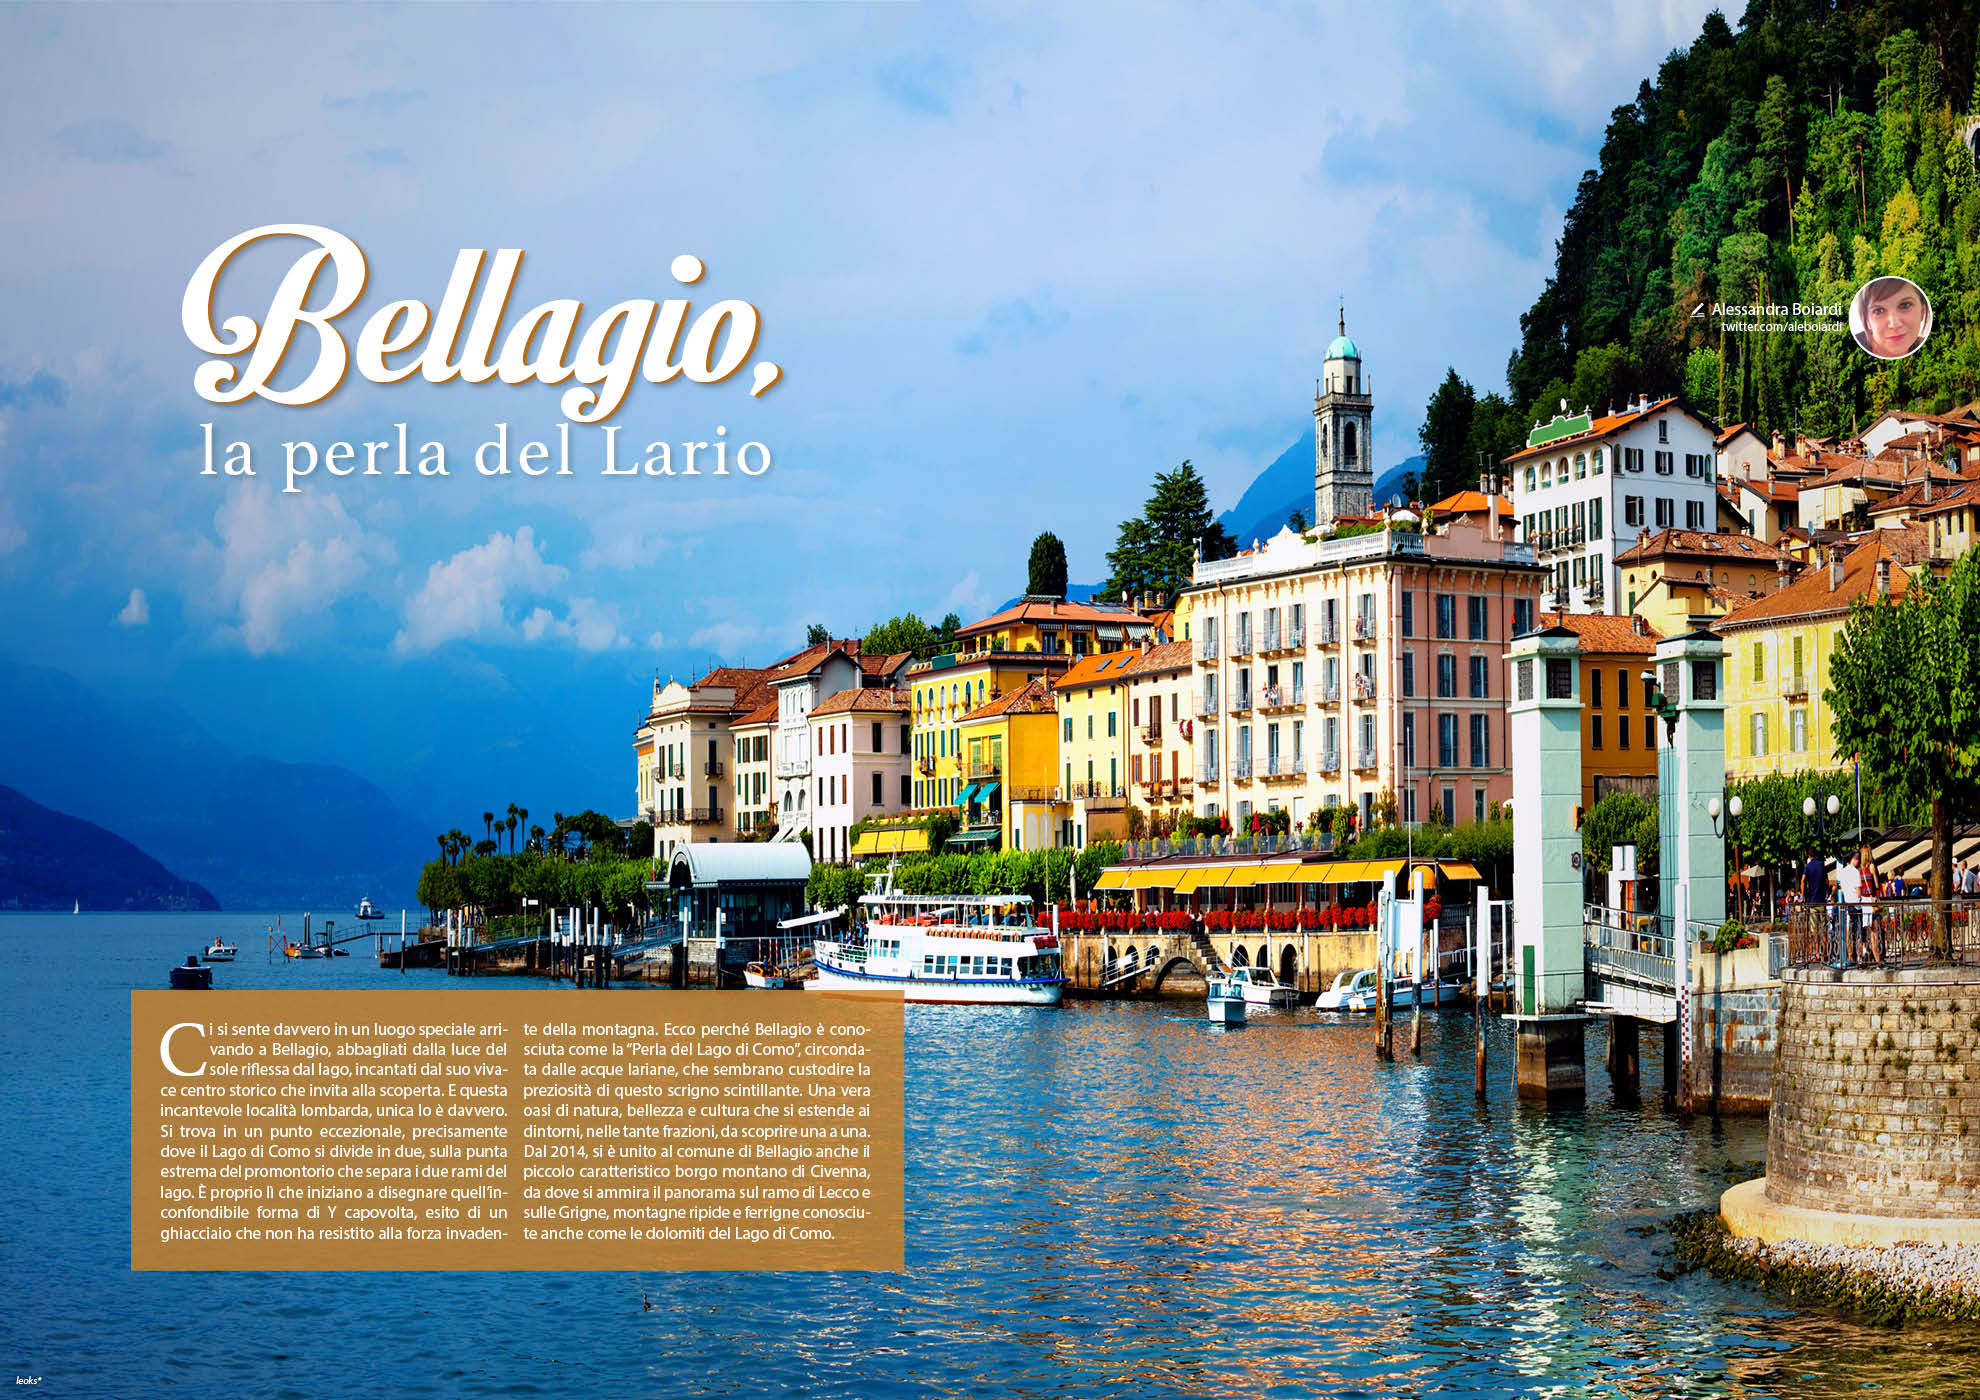 e-borghi travel 24: Speciale borghi lariani - Bellagio, la perla del Lario